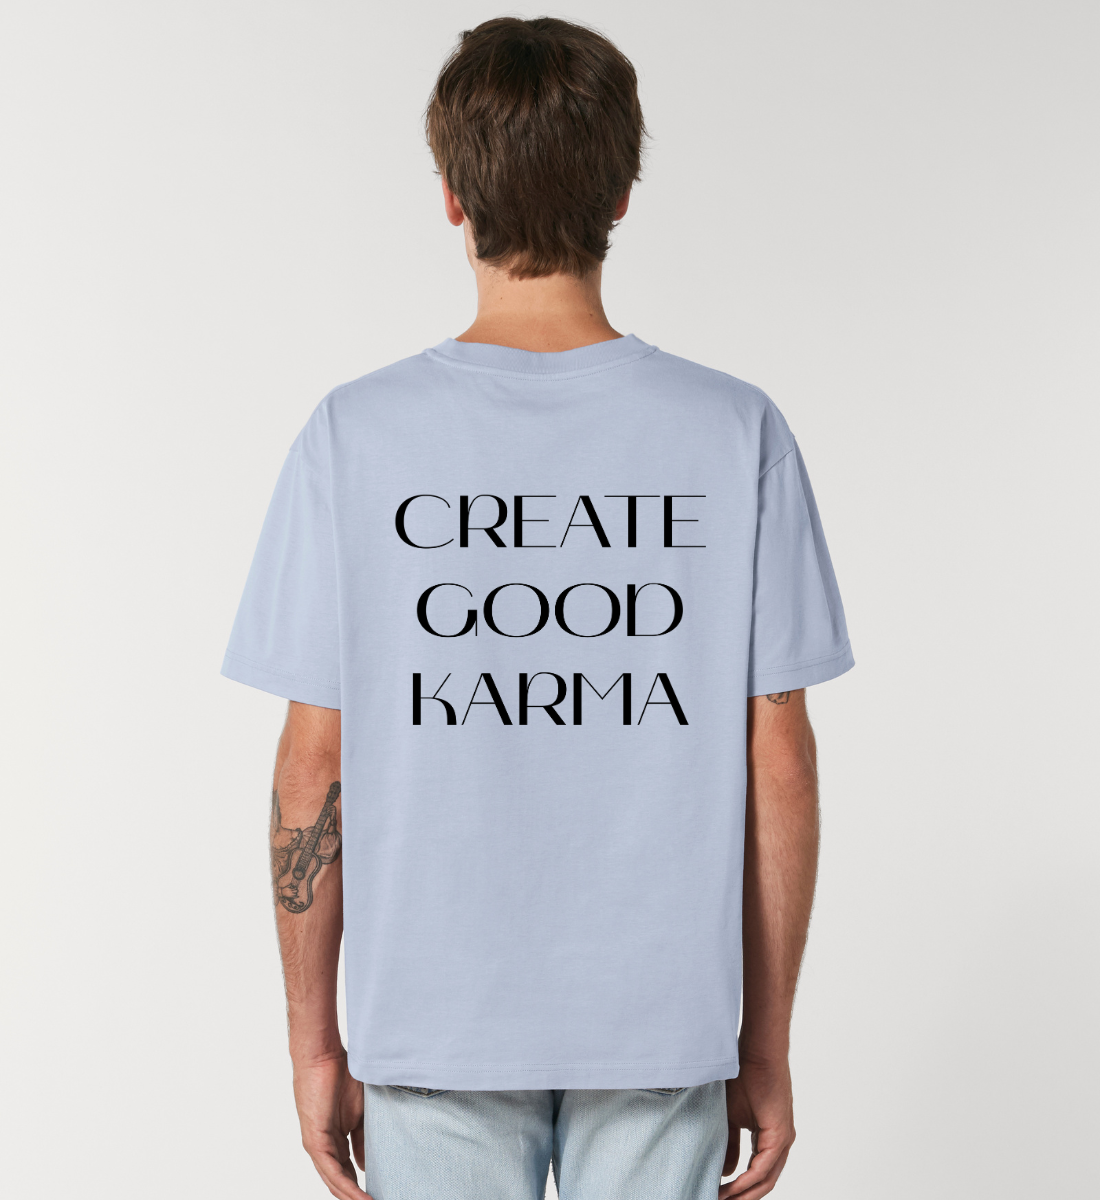 good karma l yoga t-shirt blau l bio shirt l ausgefallene yoga kleidung l nachhaltig und umweltfreundlich leben